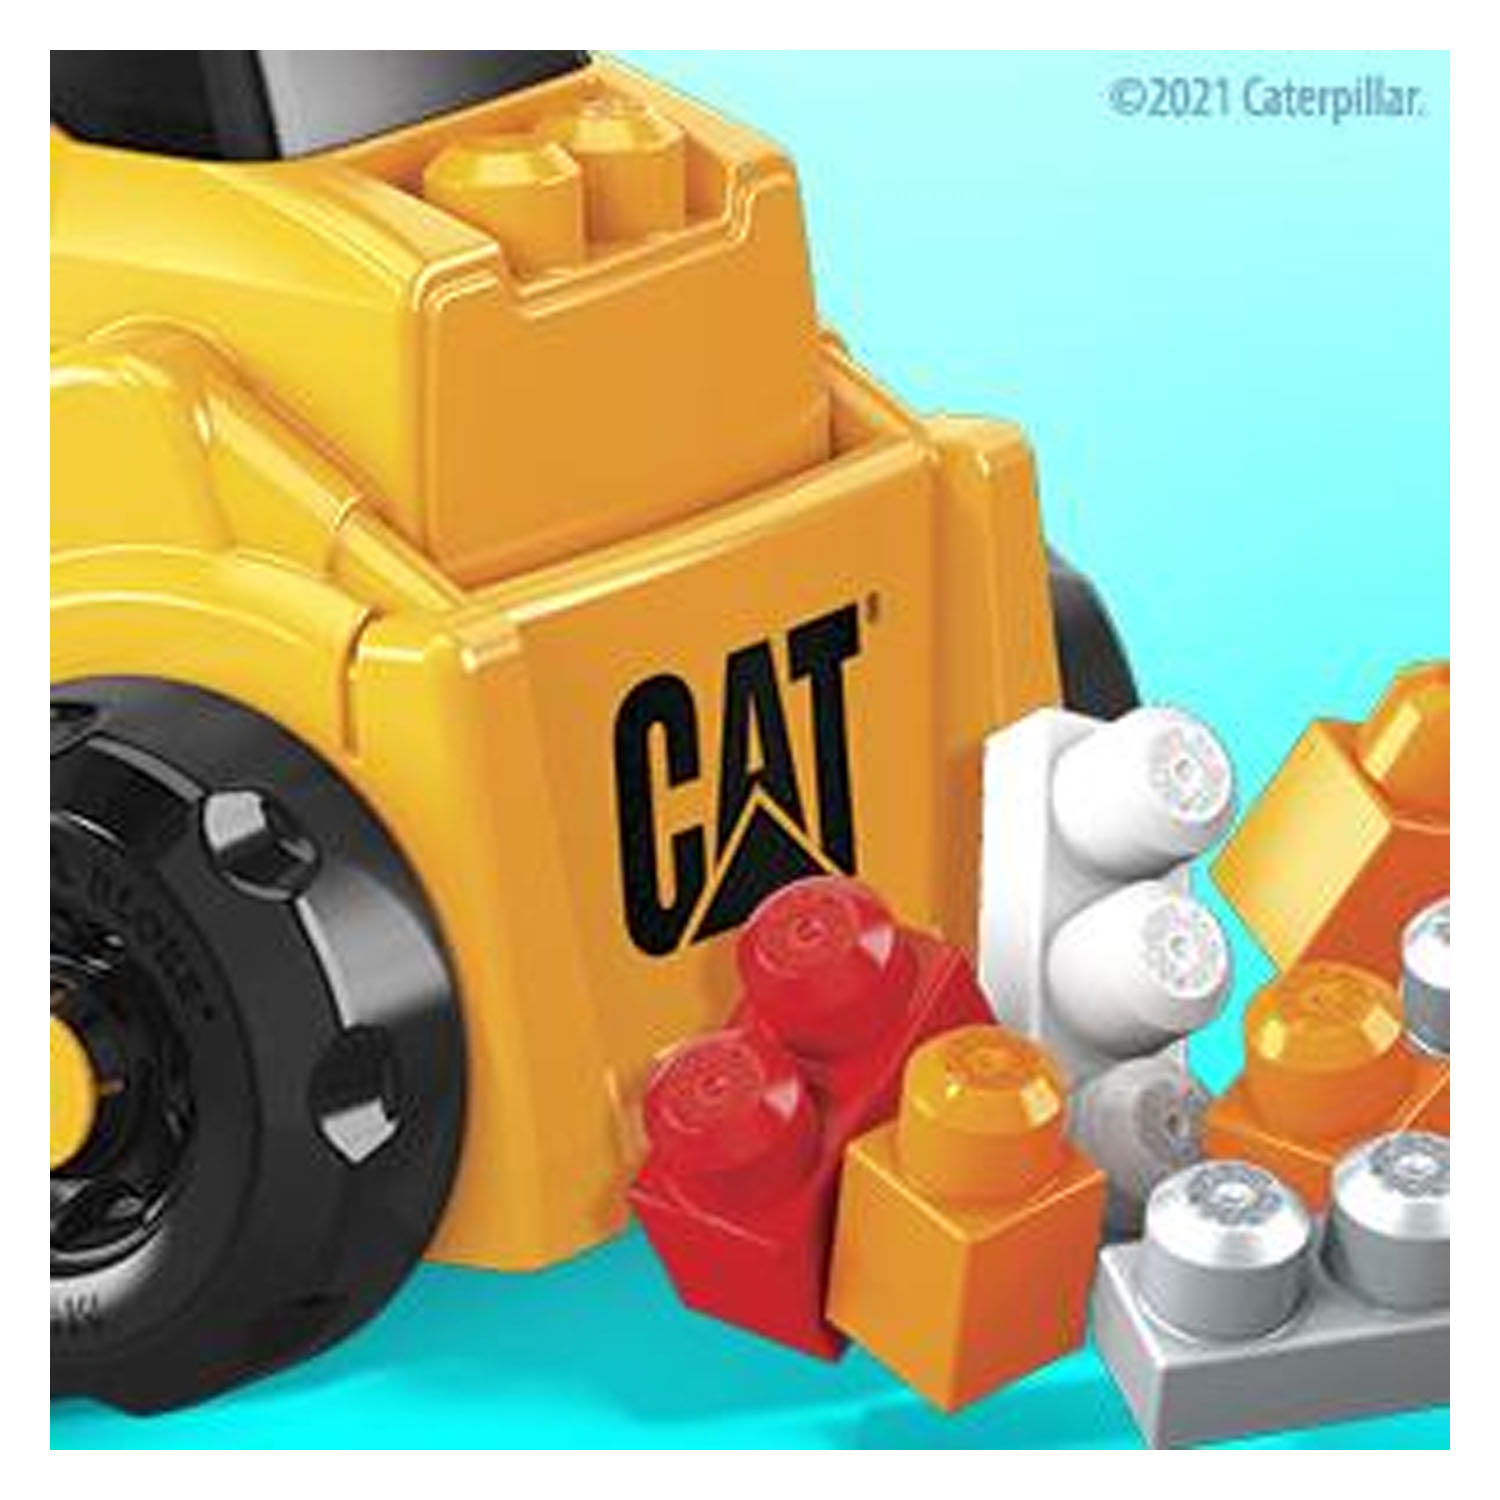 Mega Bloks CAT Build n Play Rutscherauto mit Blöcken